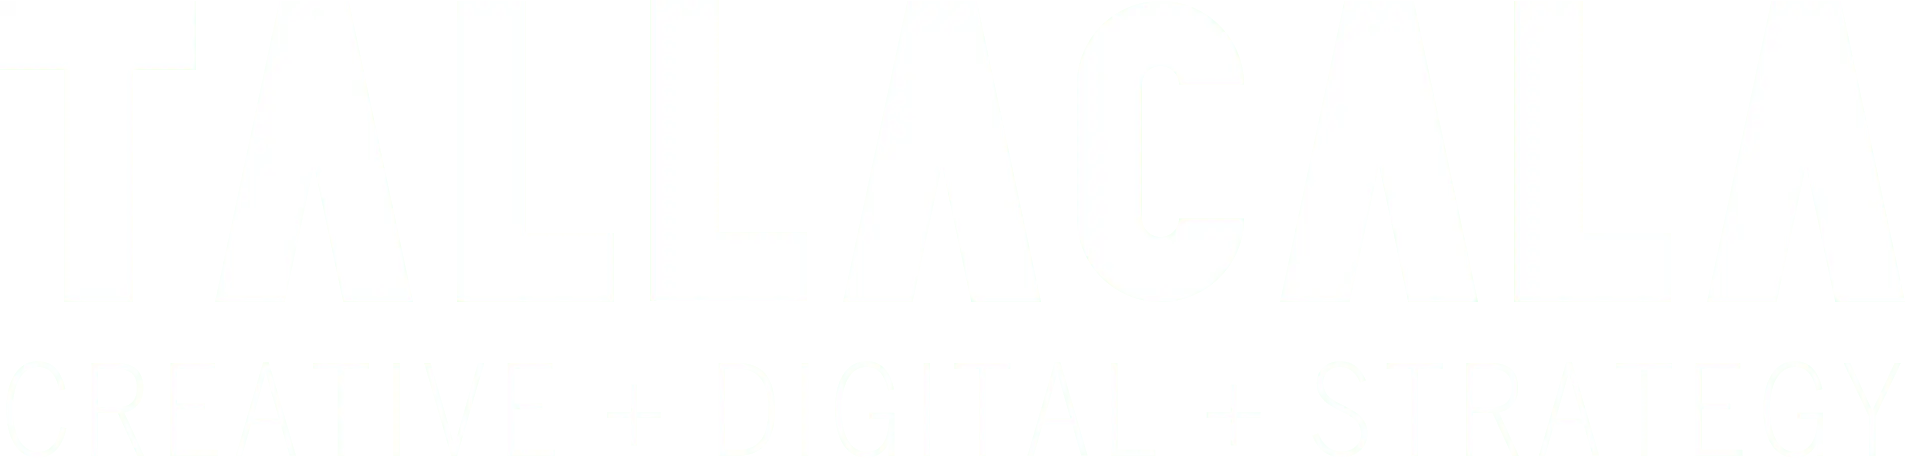 Tallacala Digital